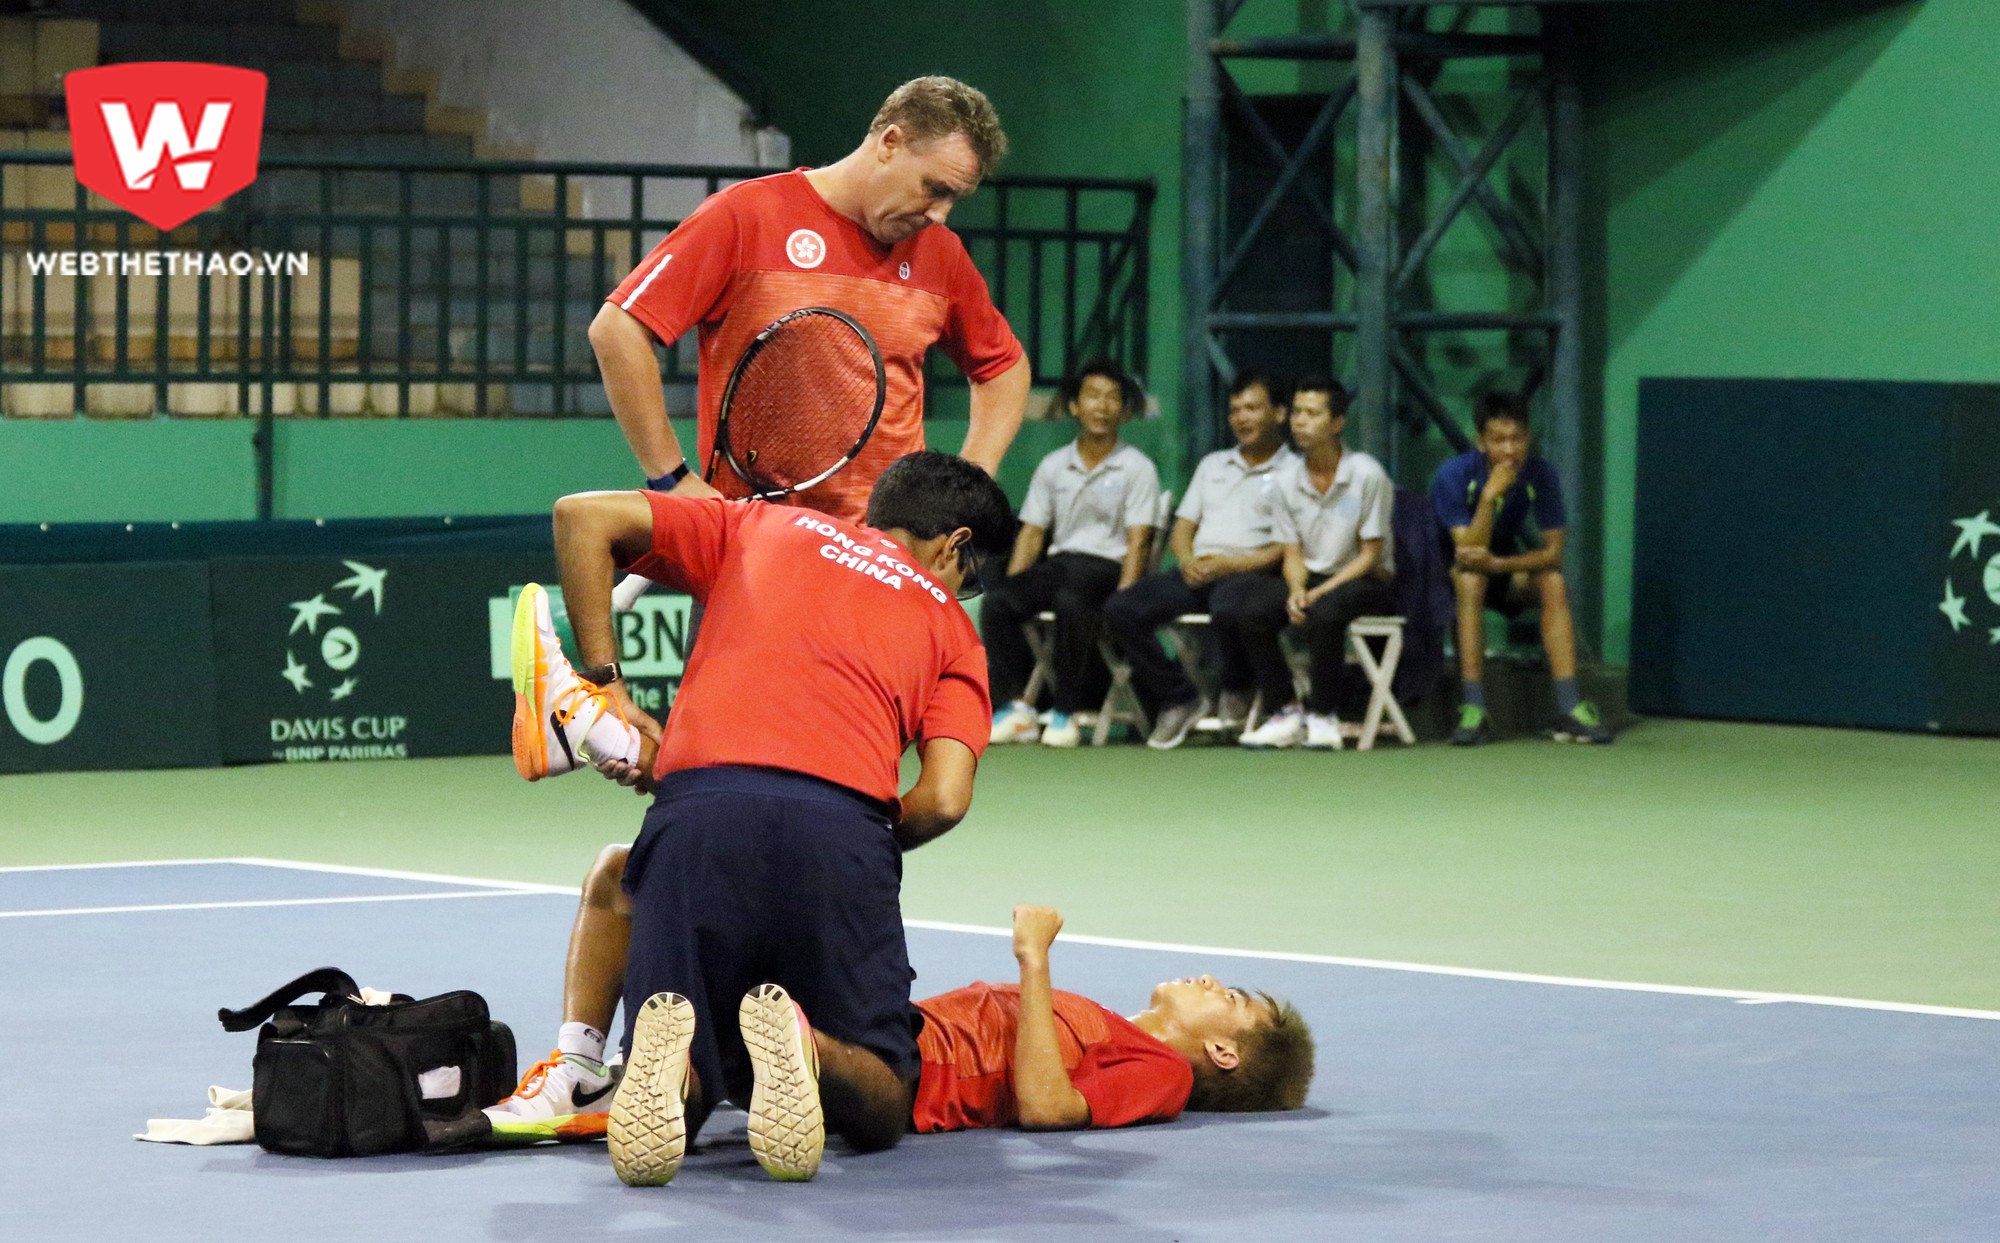 Tay vợt Hong Kong được chăm sóc ngay tại sân. Ảnh: Văn Nhân